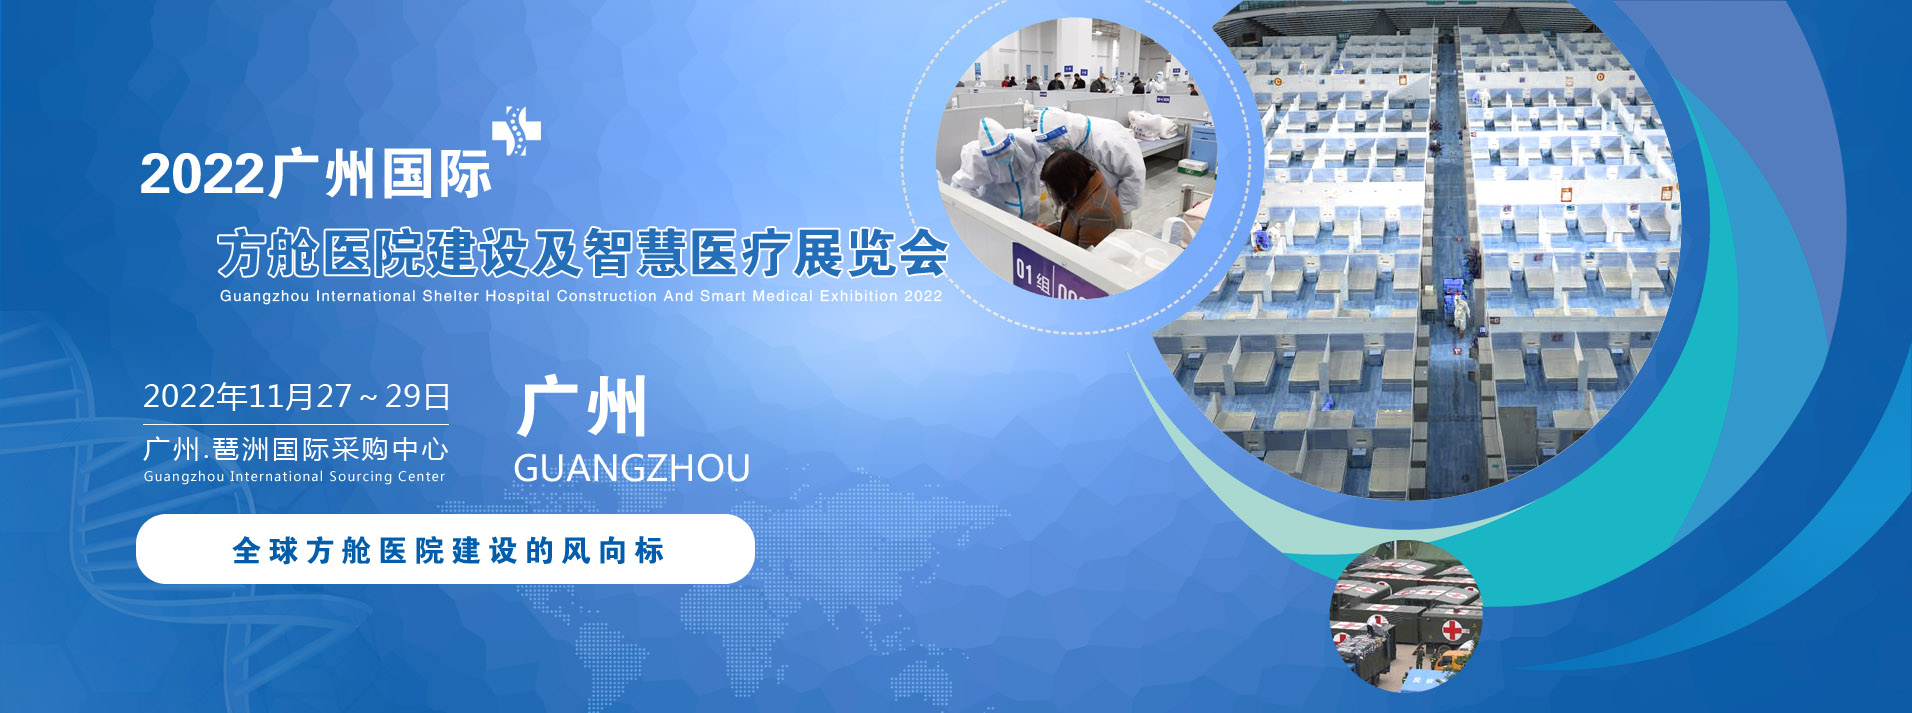 2022广州国际方舱医院建设及智慧医疗展览会.jpg